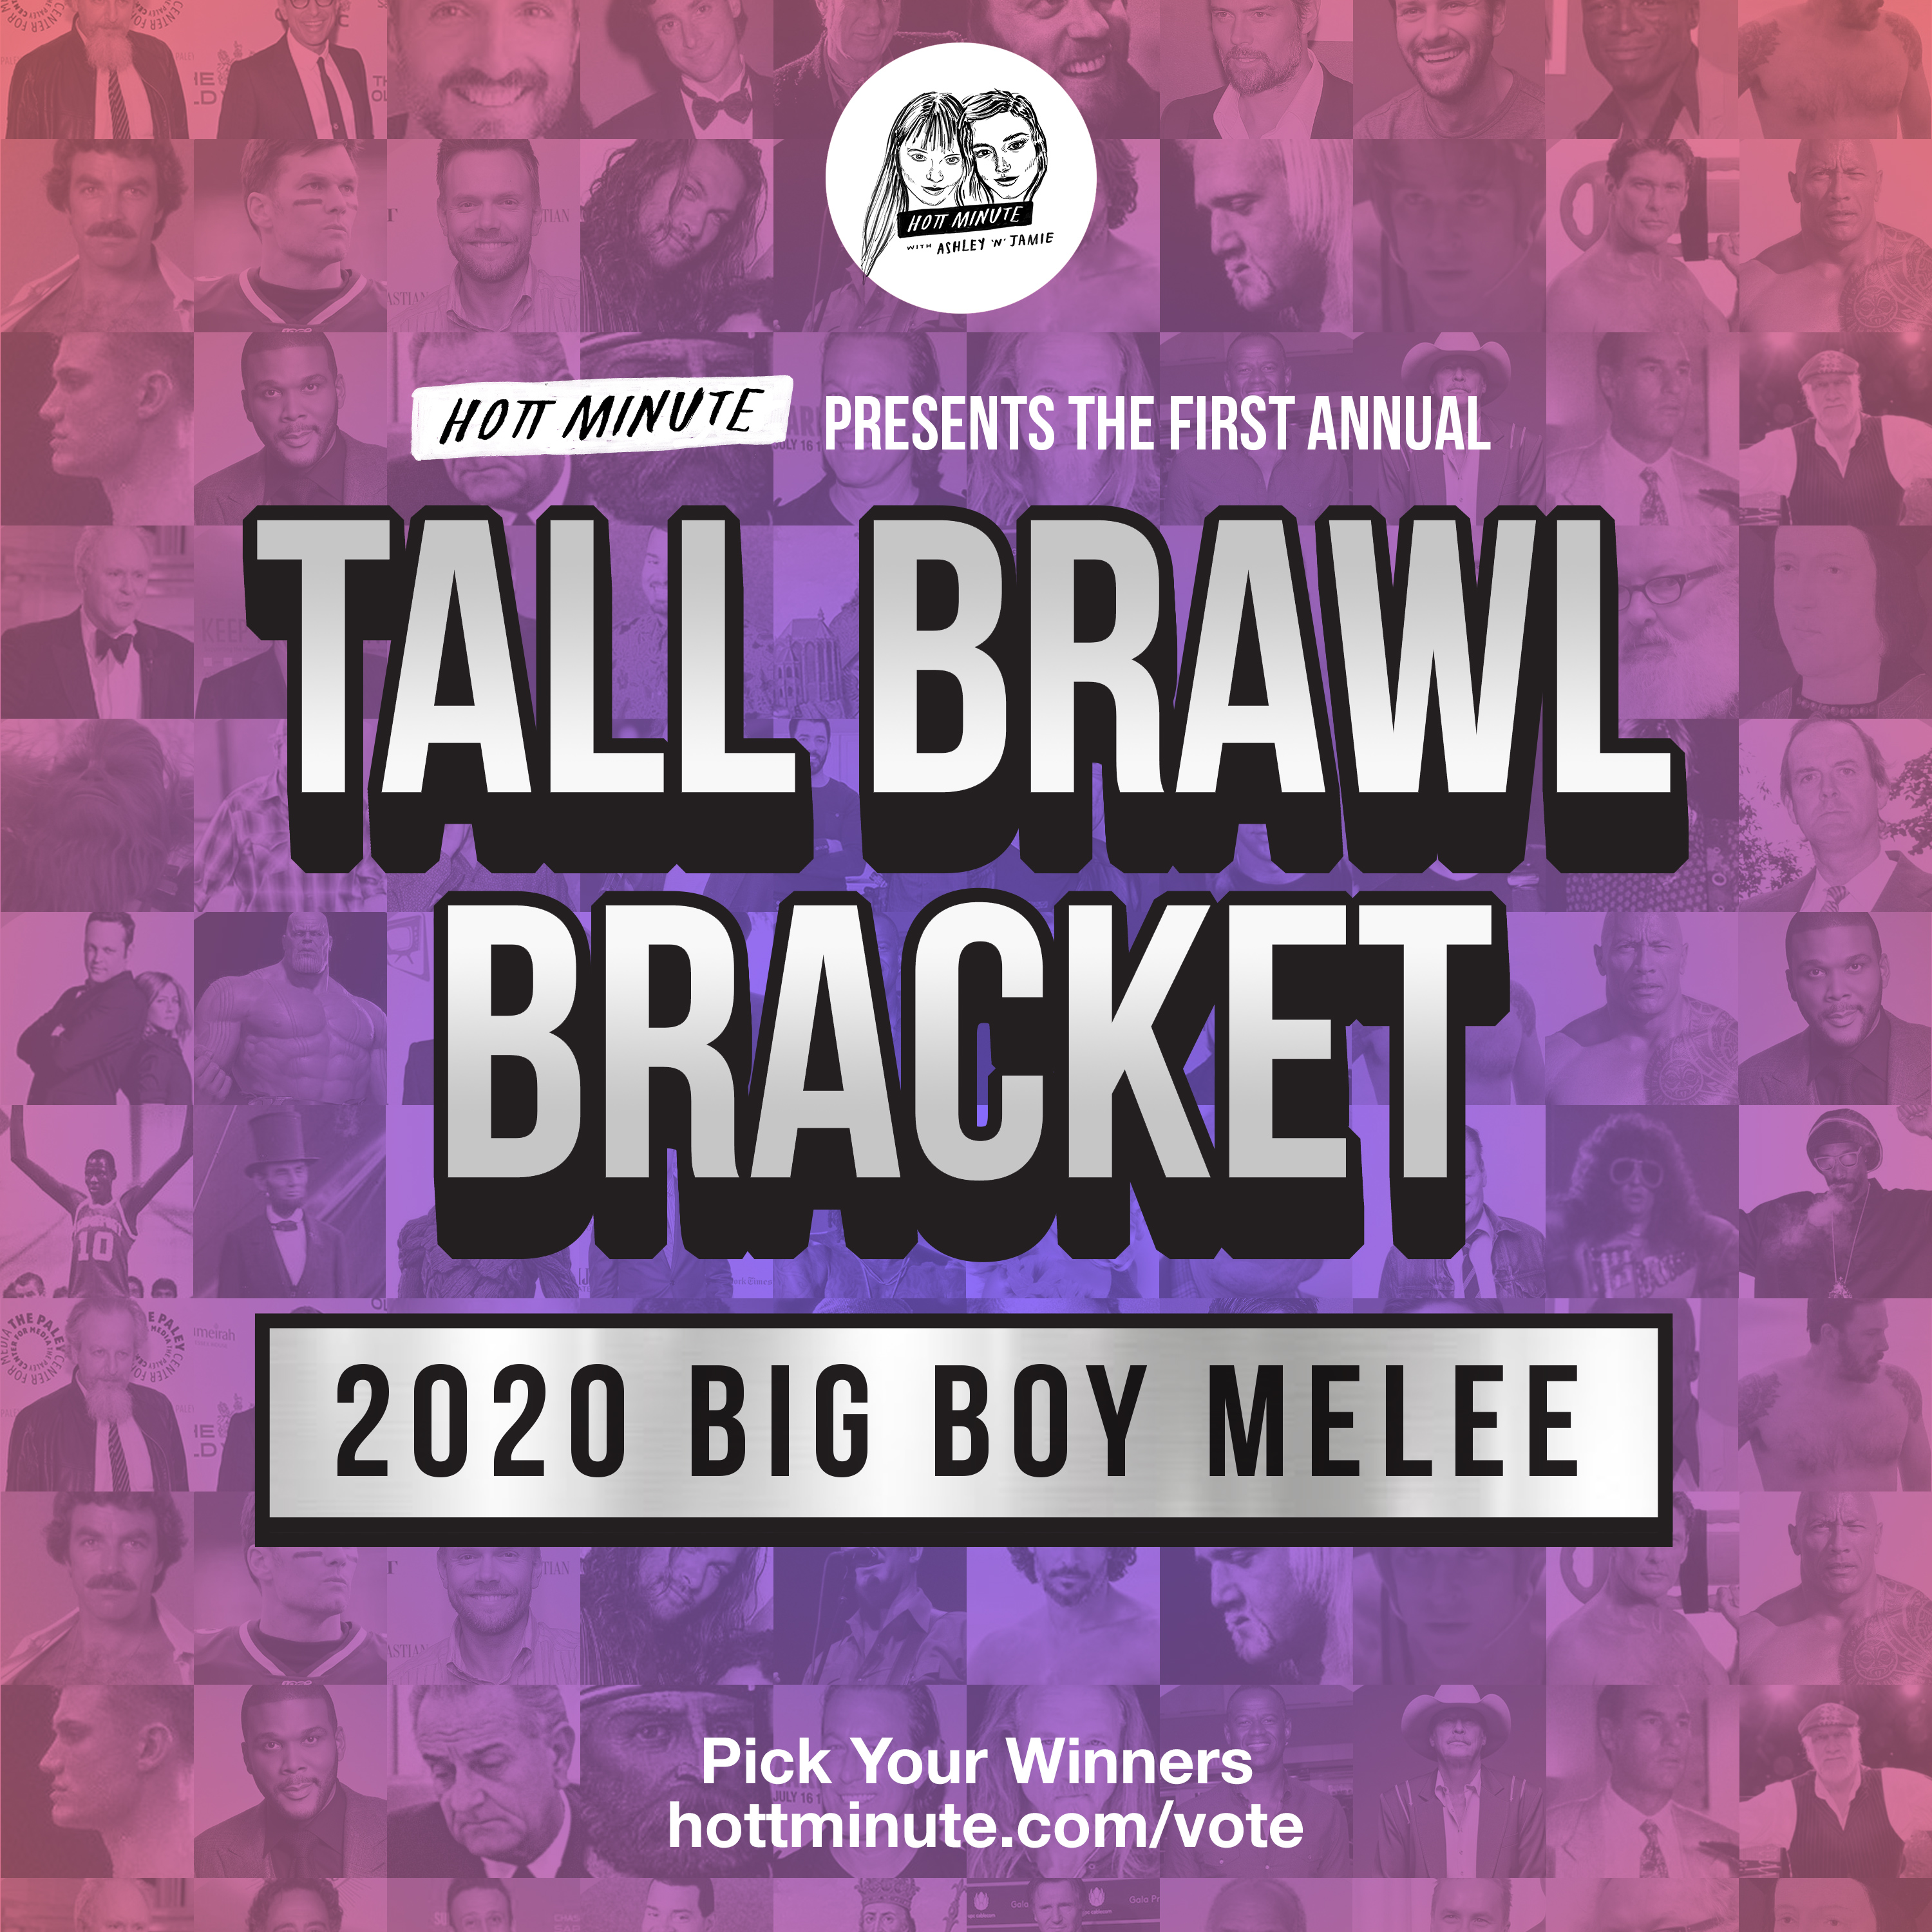 First Annual 2020 Tall Brawl Bracket: Big Boy Melee